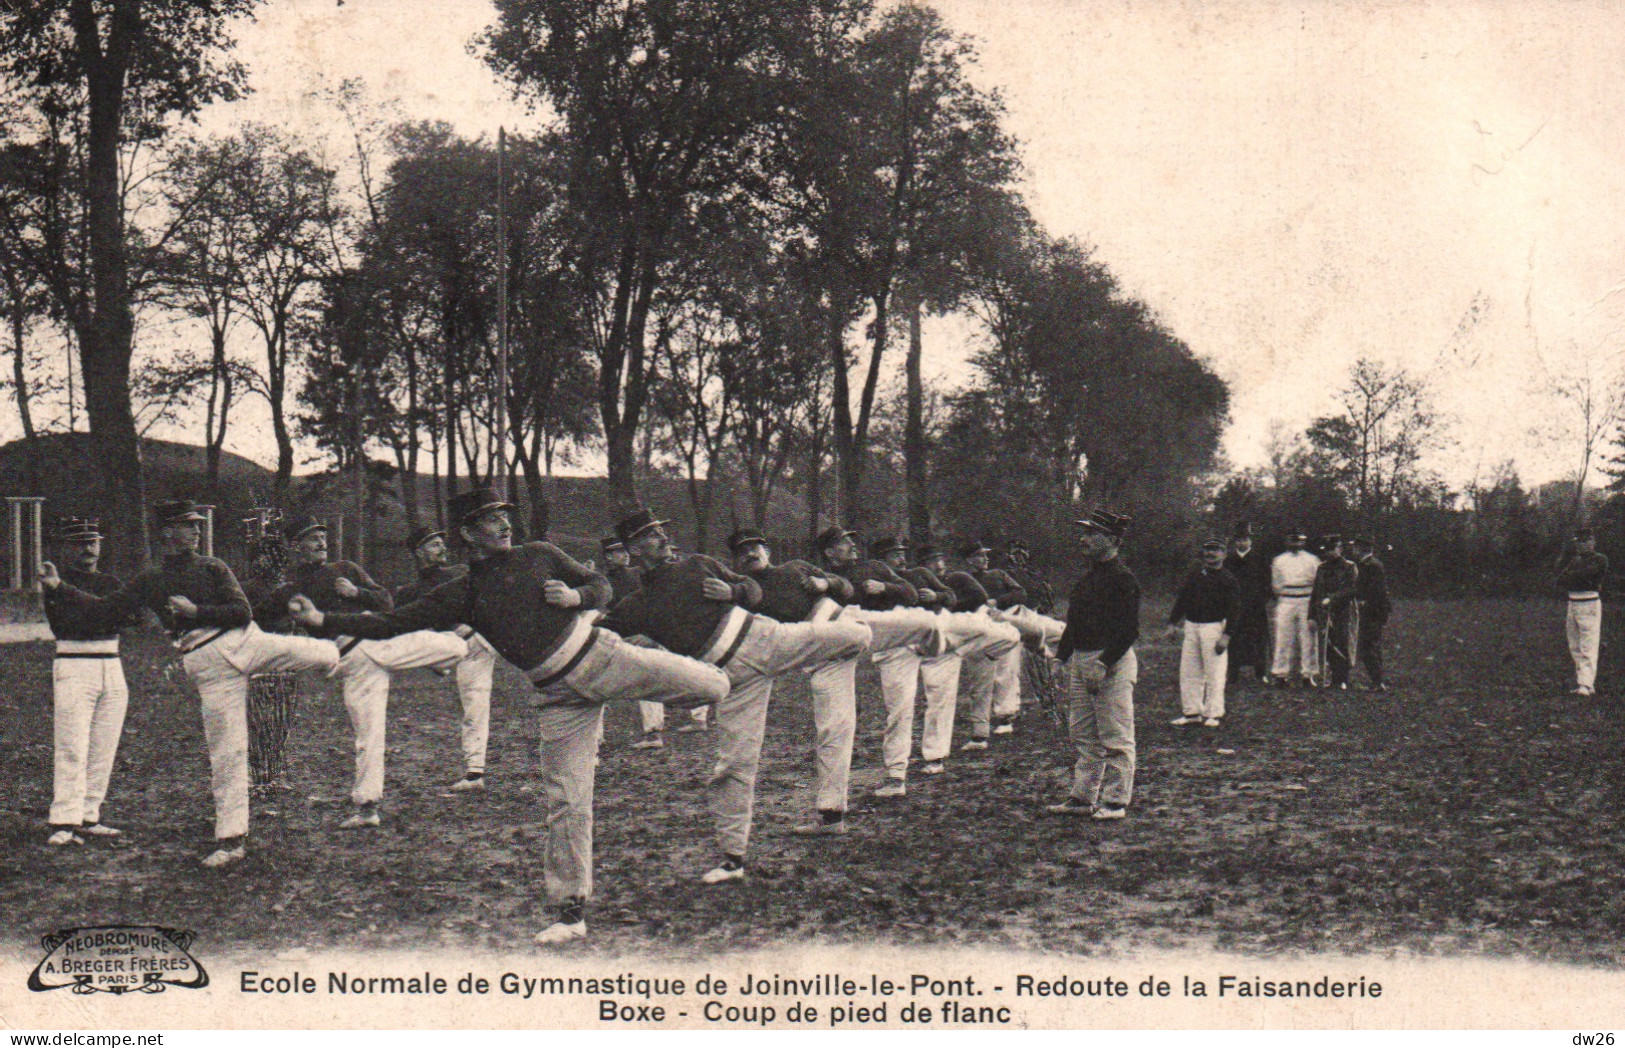 Ecole Normale De Gymnastique Joinville-le-Pont, Redoute De La Faisanderie, Boxe Française: Coup De Pied De Flan - Boxing